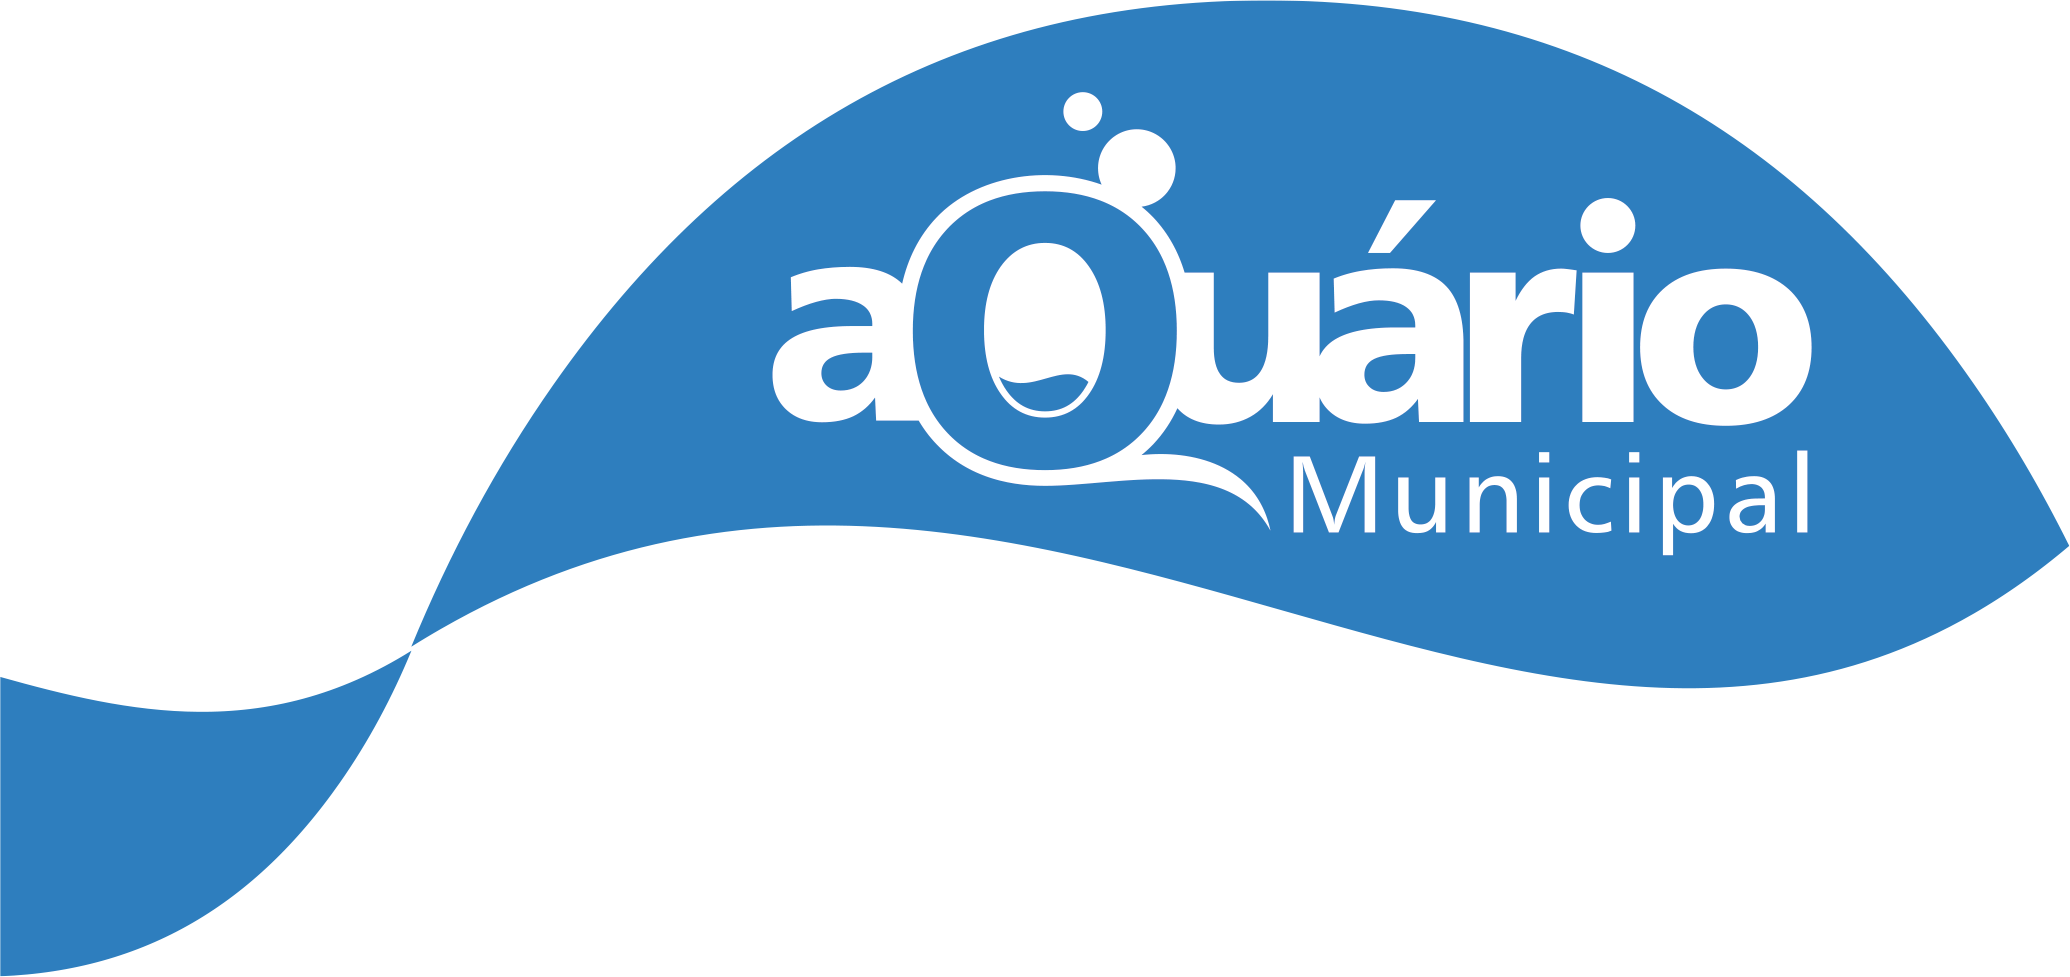 Imagem contendo a logo do aquario